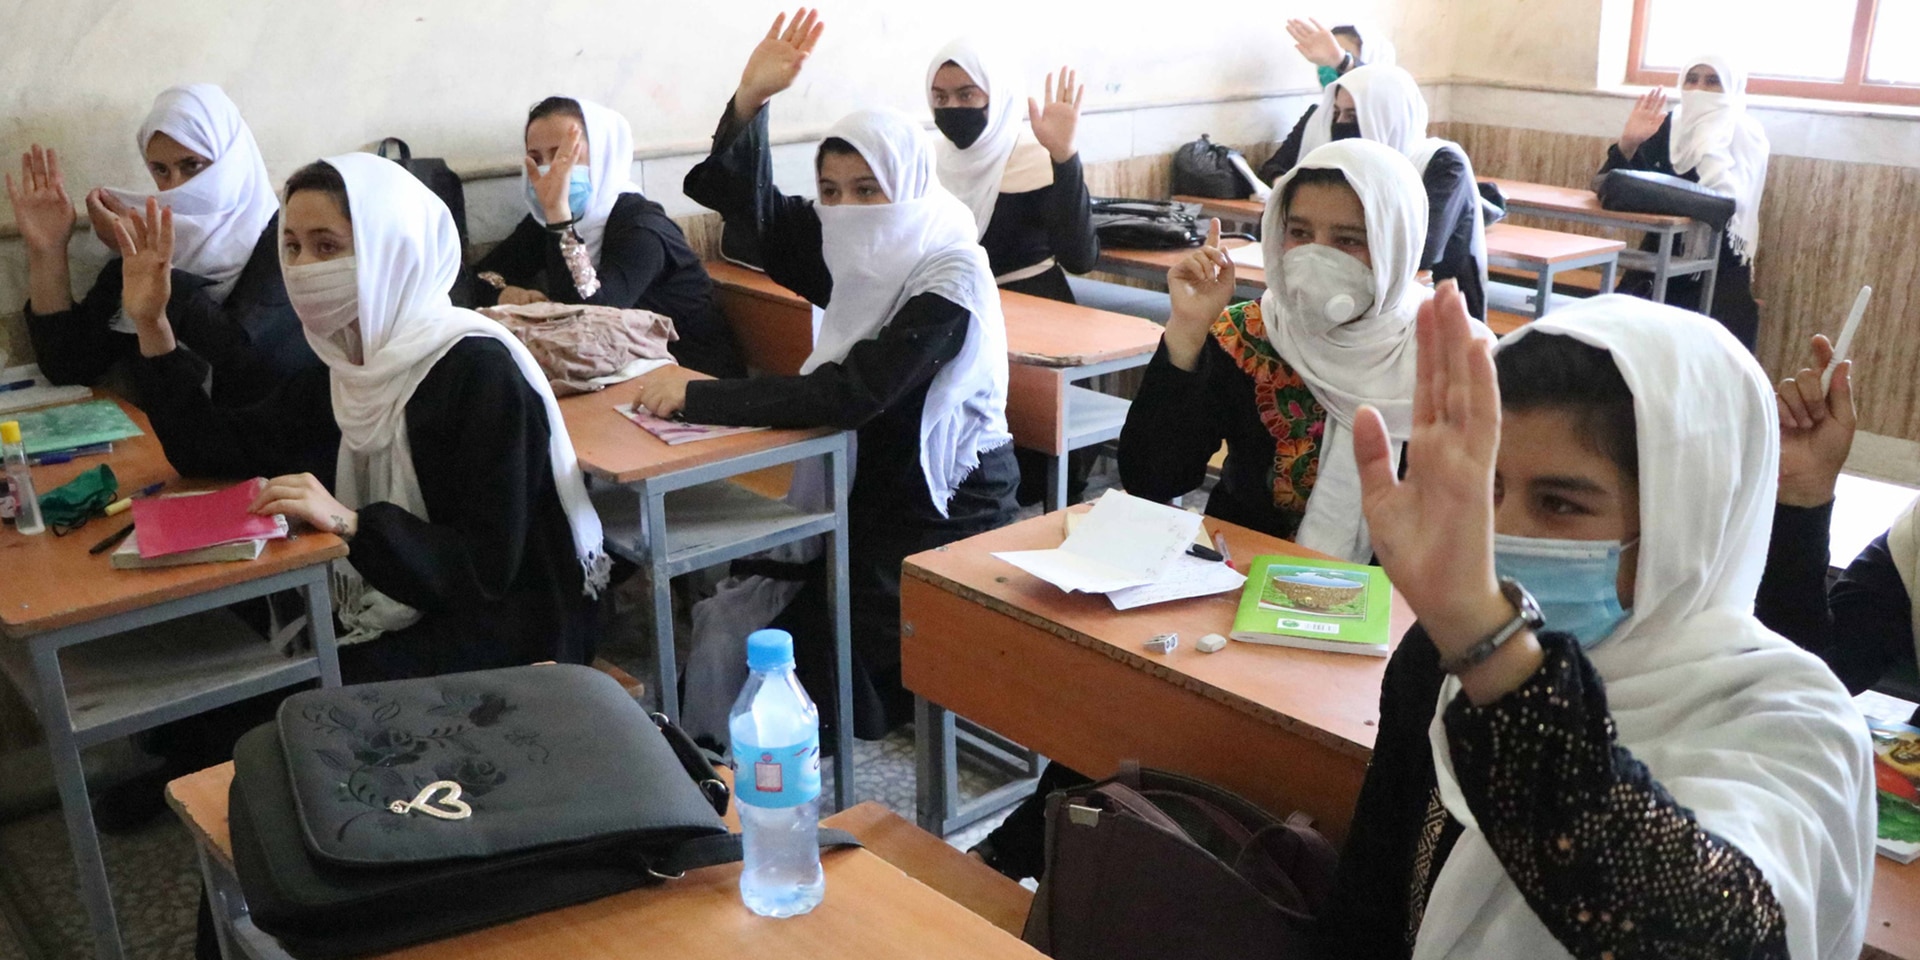  Une salle de classe en Afghanistan avec des écolières qui lèvent la main pour répondre.